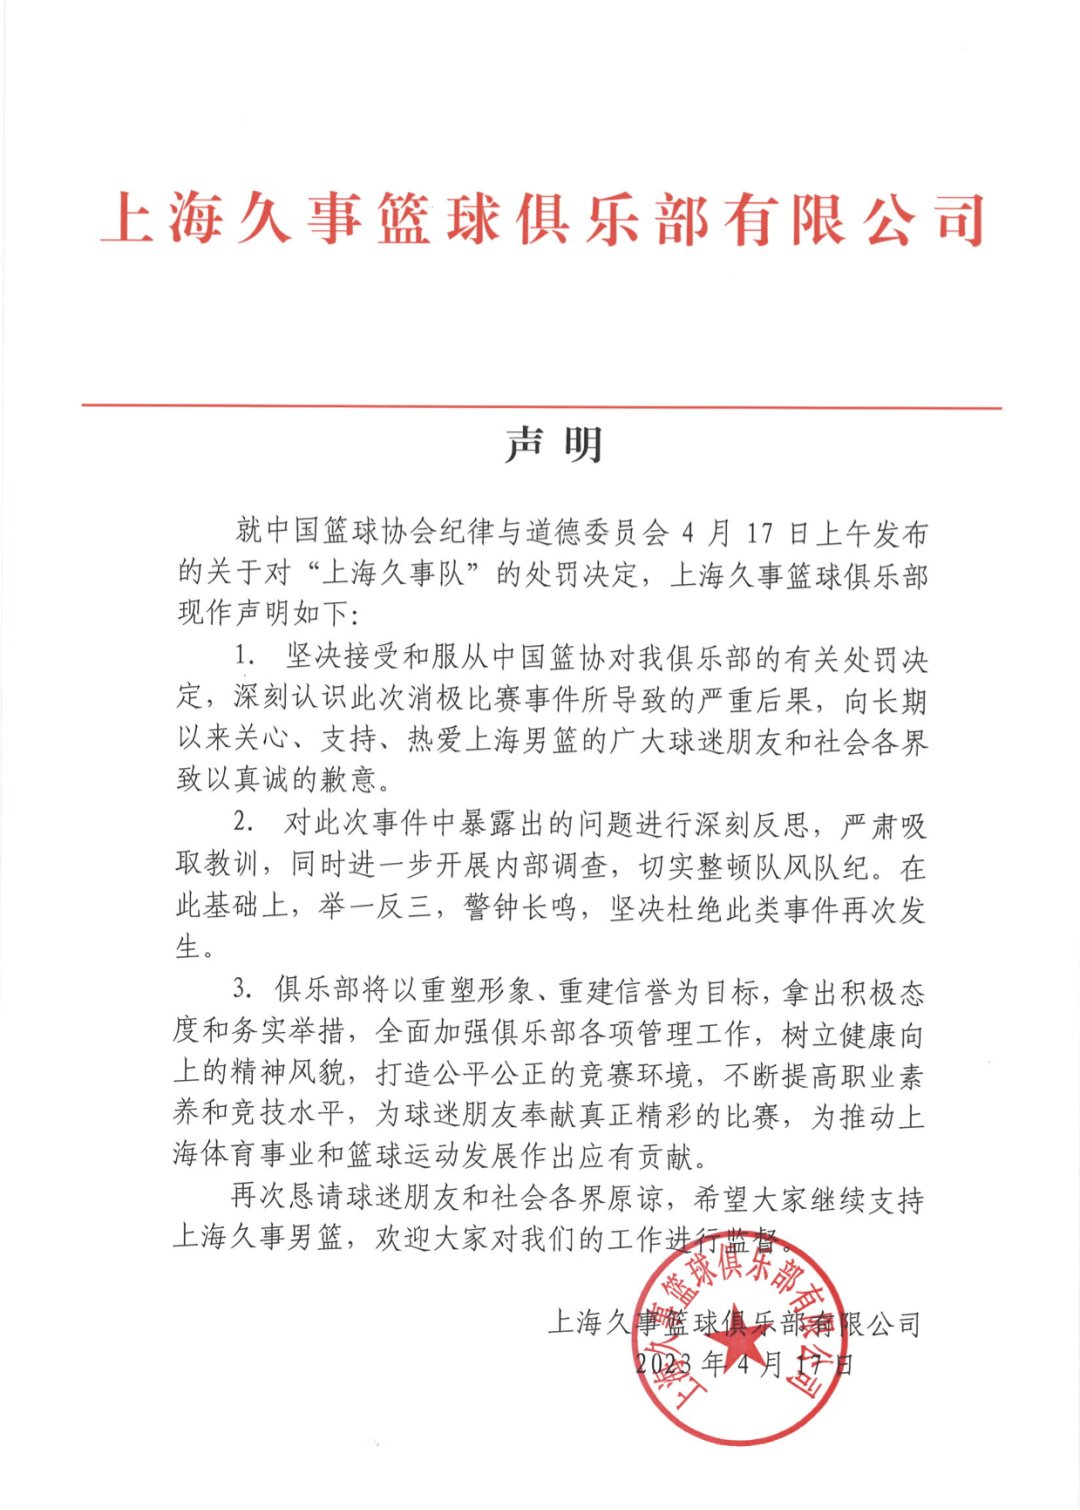 上海久事男篮：坚决接受有关处罚决定 进一步开展内部调查、整顿队风队纪